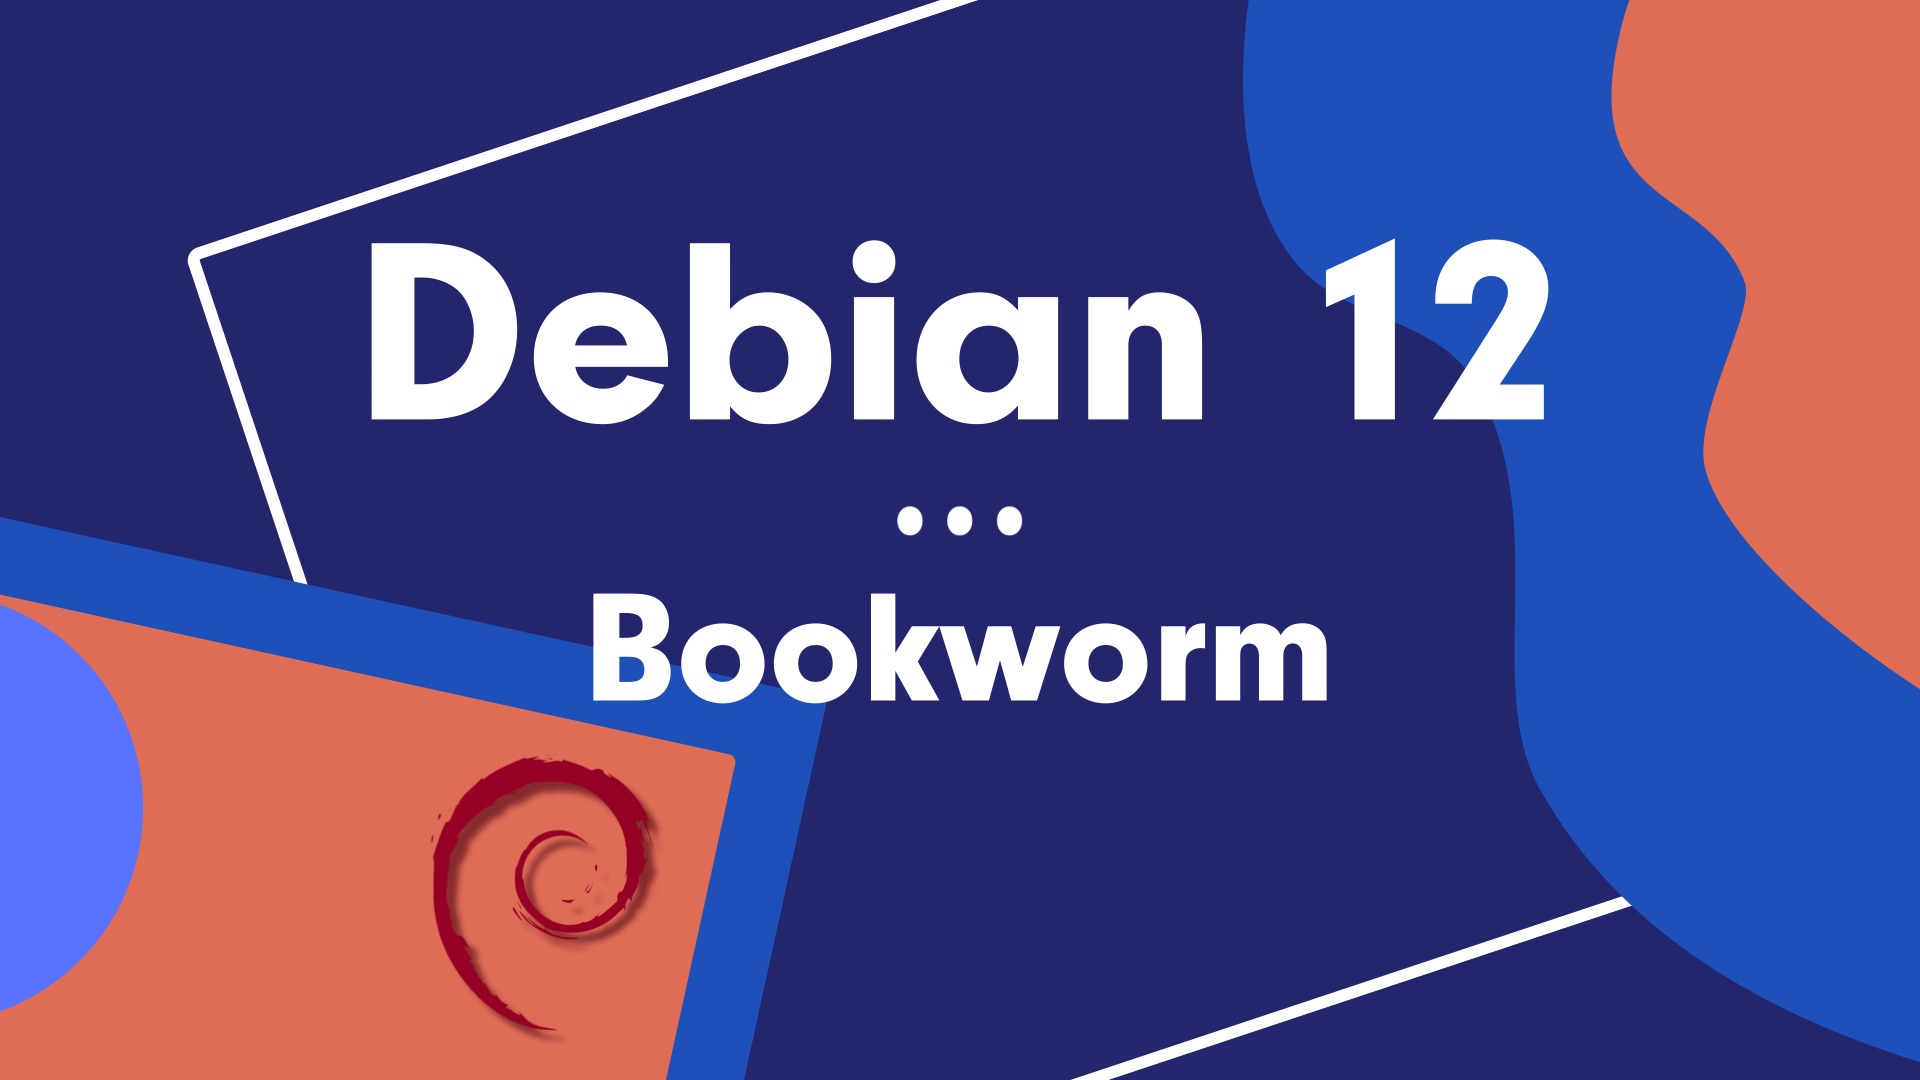 Come eseguire l’aggiornamento a Debian 12 da Debian 11